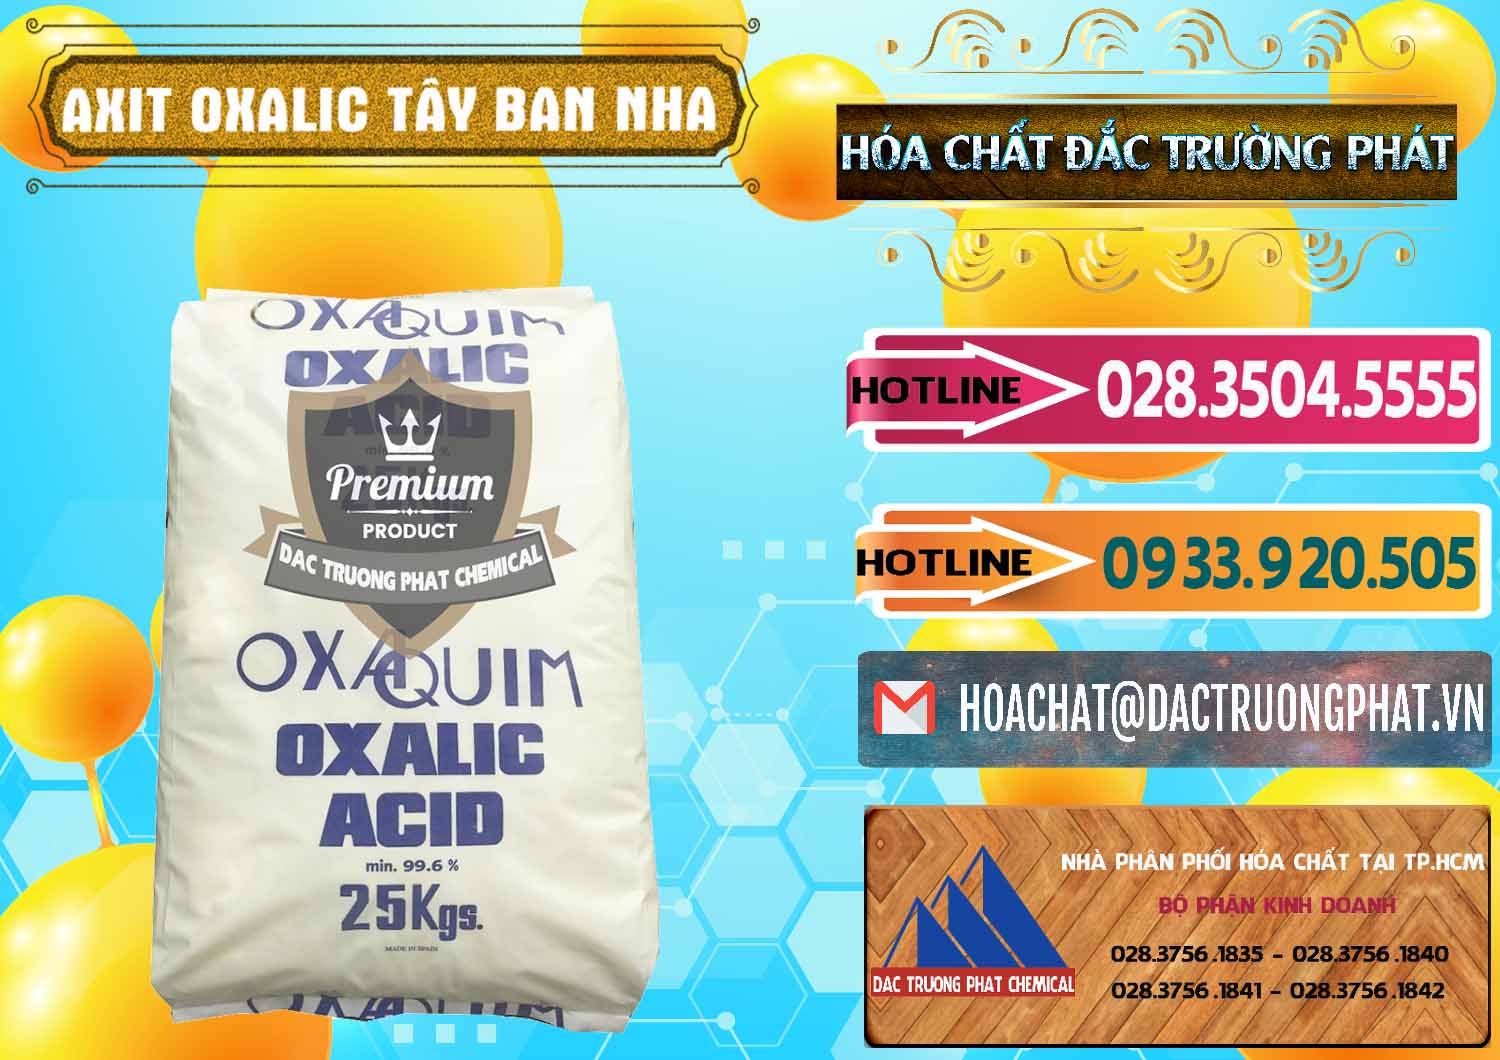 Cty kinh doanh và bán Acid Oxalic – Axit Oxalic 99.6% Tây Ban Nha Spain - 0269 - Nhà cung cấp và bán hóa chất tại TP.HCM - dactruongphat.vn